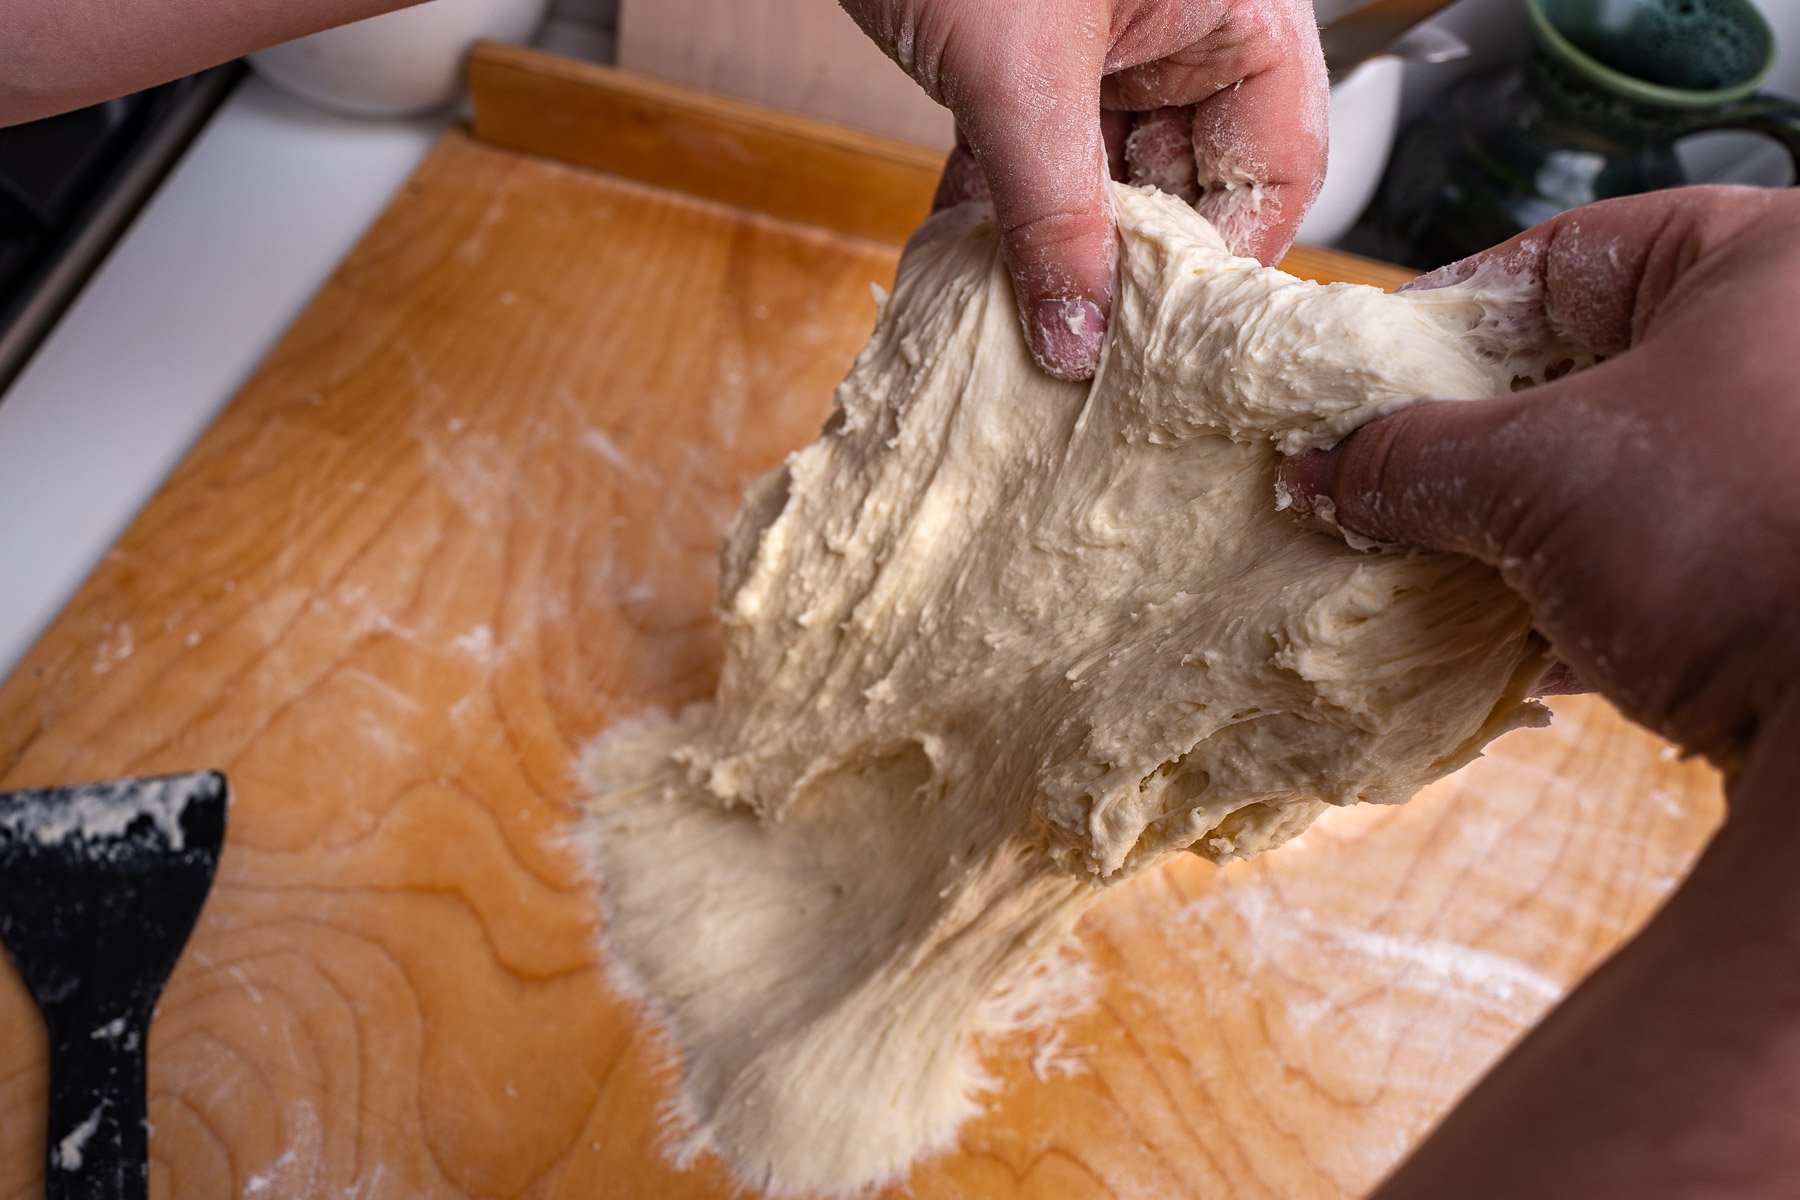 ciasto po wchłonięciu całej mąki z blatu zacznie się kleić - należy wyrabiać je rozciągając do góry i zawijając na pół